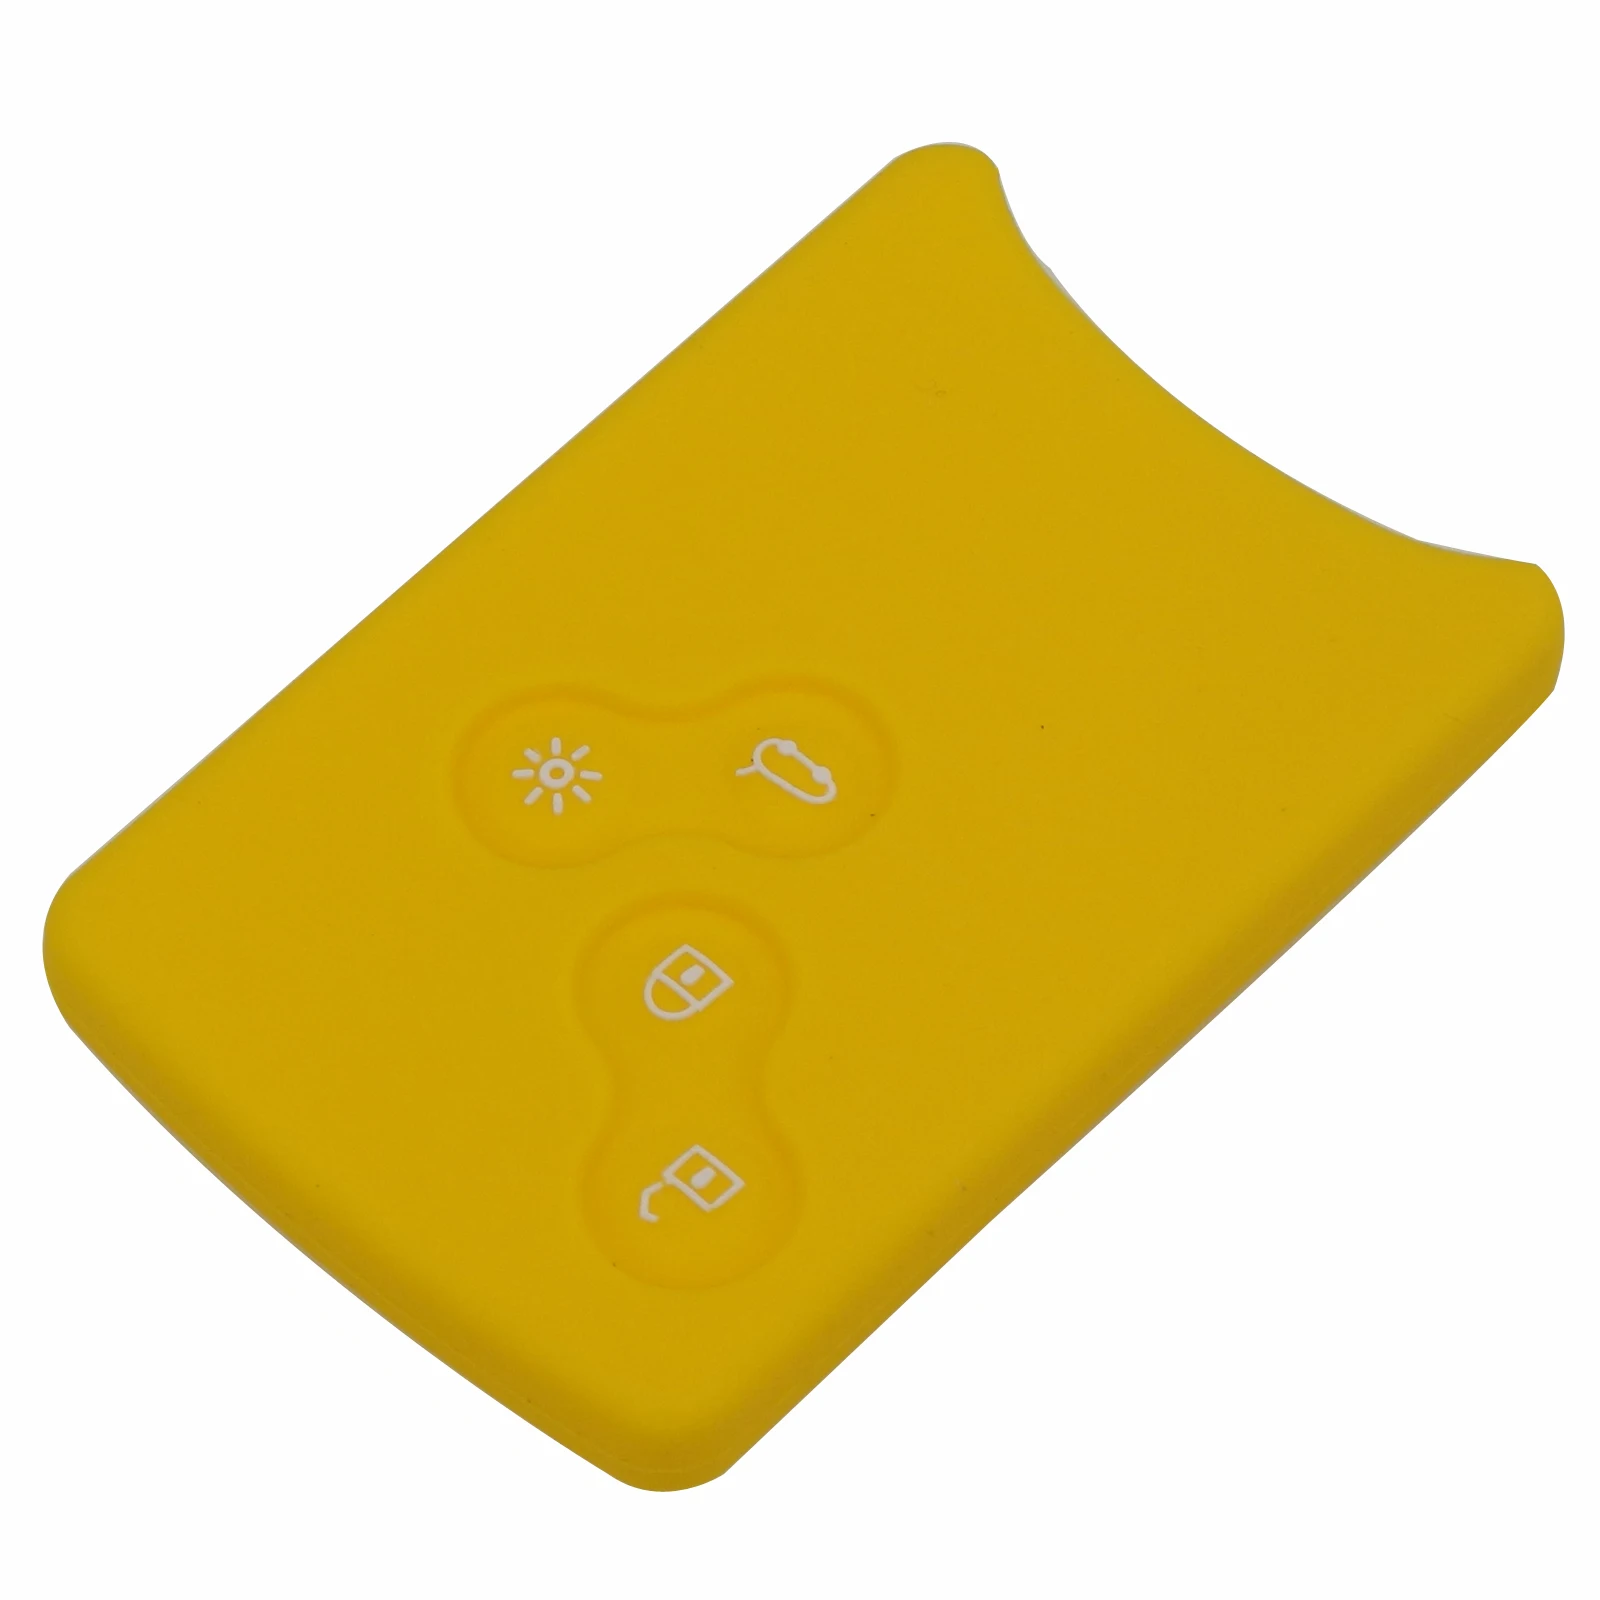 Jingyuqin 30 шт./лот 4 кнопки автомобильный ключ силиконовый чехол протектор держатель для Renault Clio Logan Megane 2 3 Koleos Scenic чехол для карт - Название цвета: Yellow